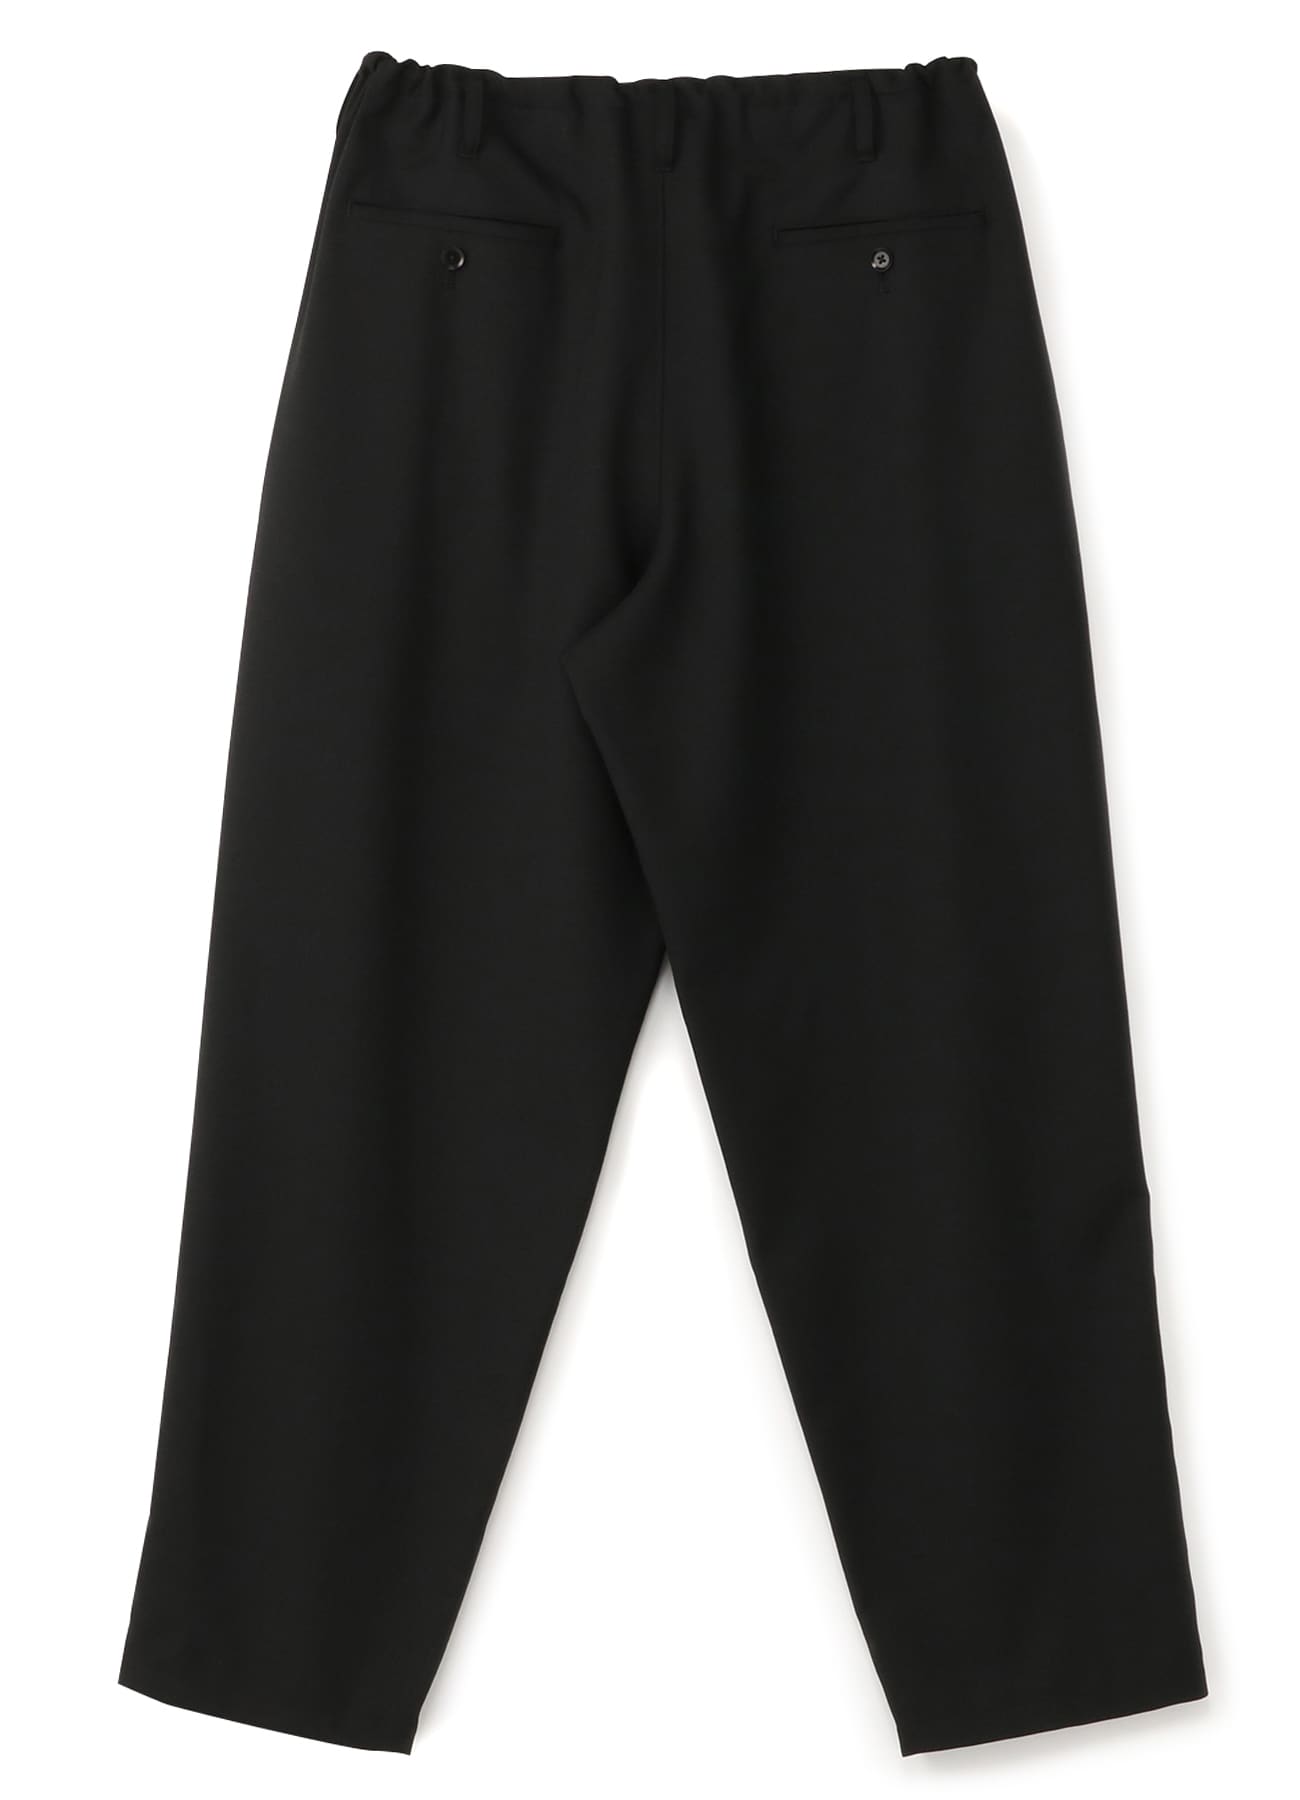 LawPro+ Men's 100% Polyester Trousers | Uniform Pants